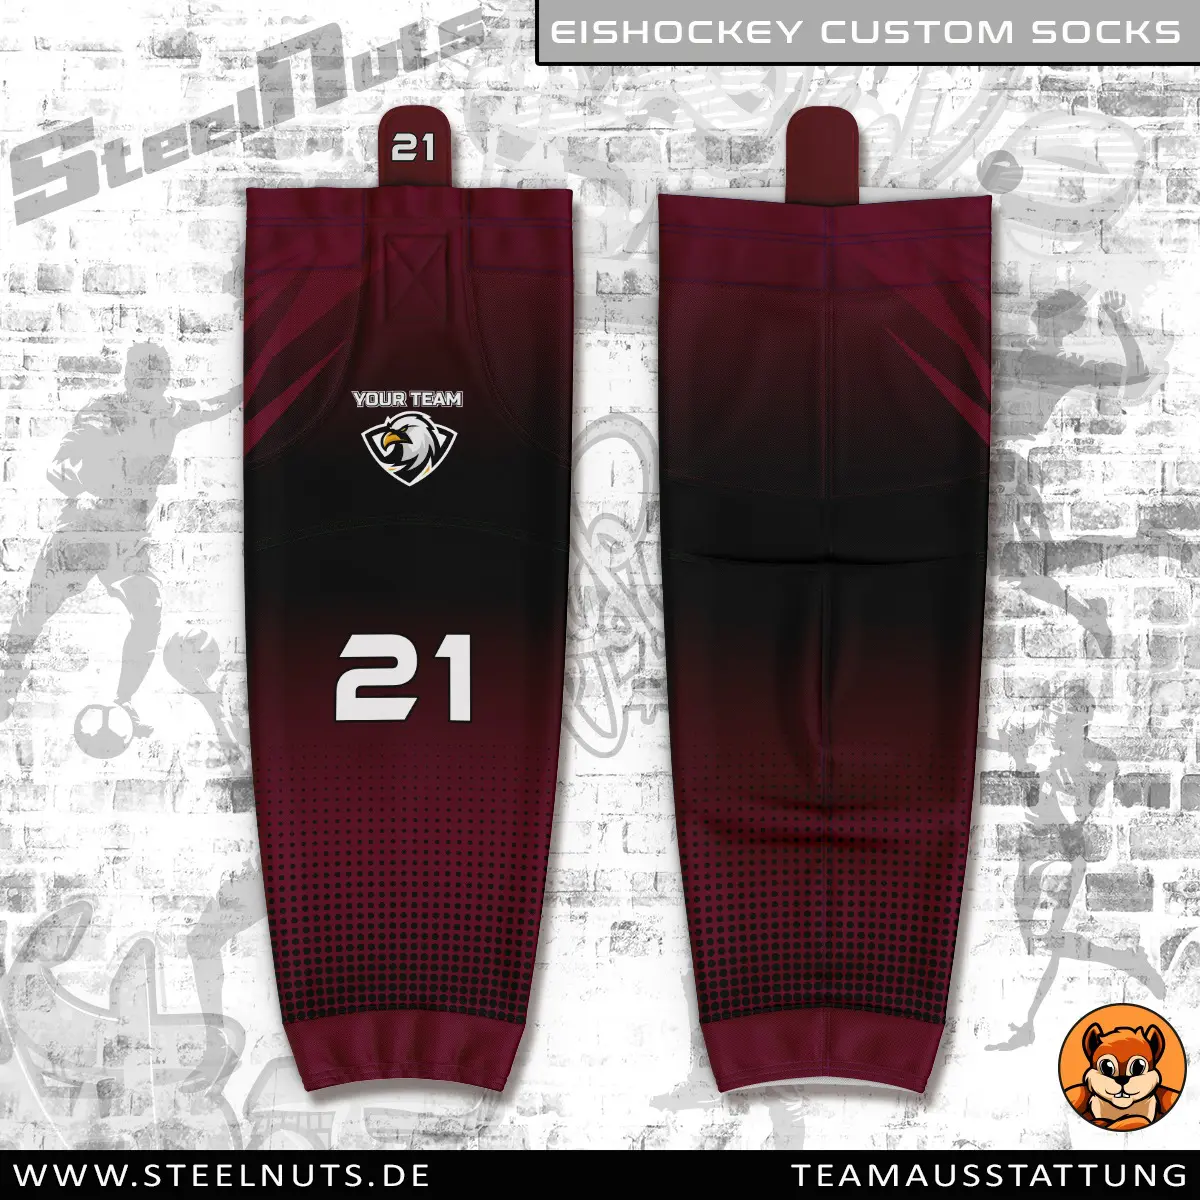 Steelnuts_Eishockey Custom Socks